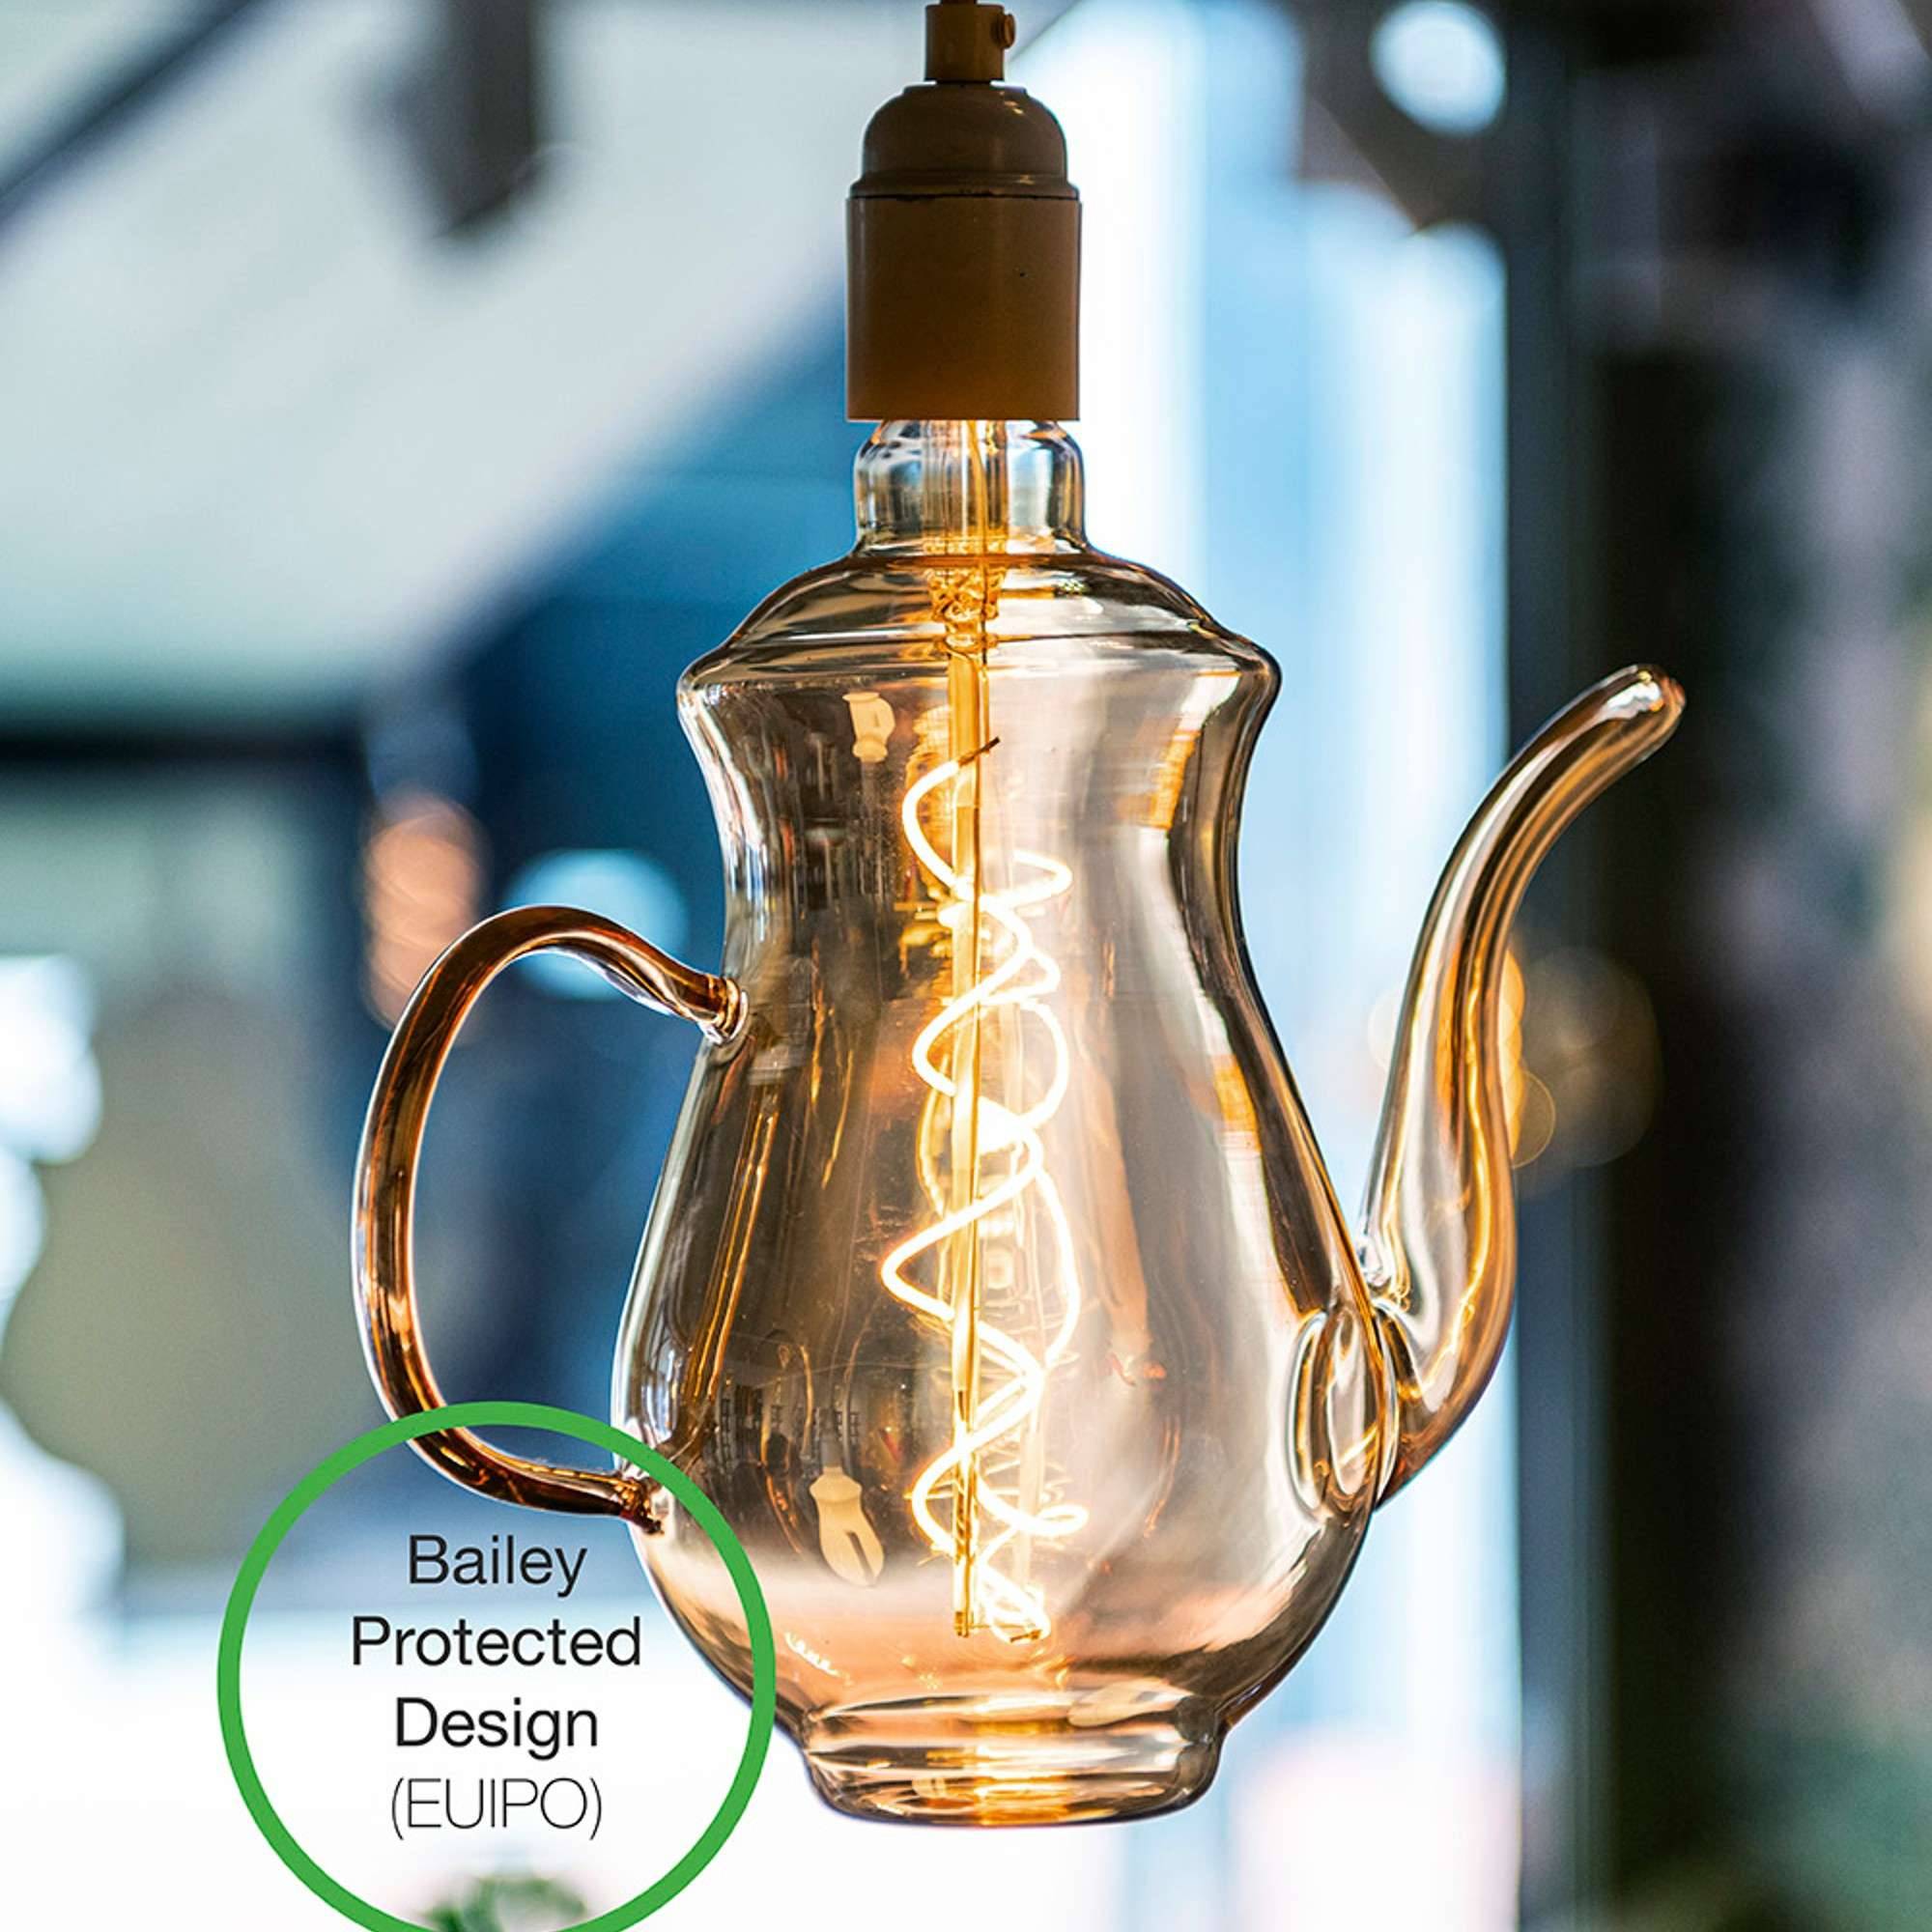 Ampoule vintage filaments torsadés LED - E27 - Décoration et arts